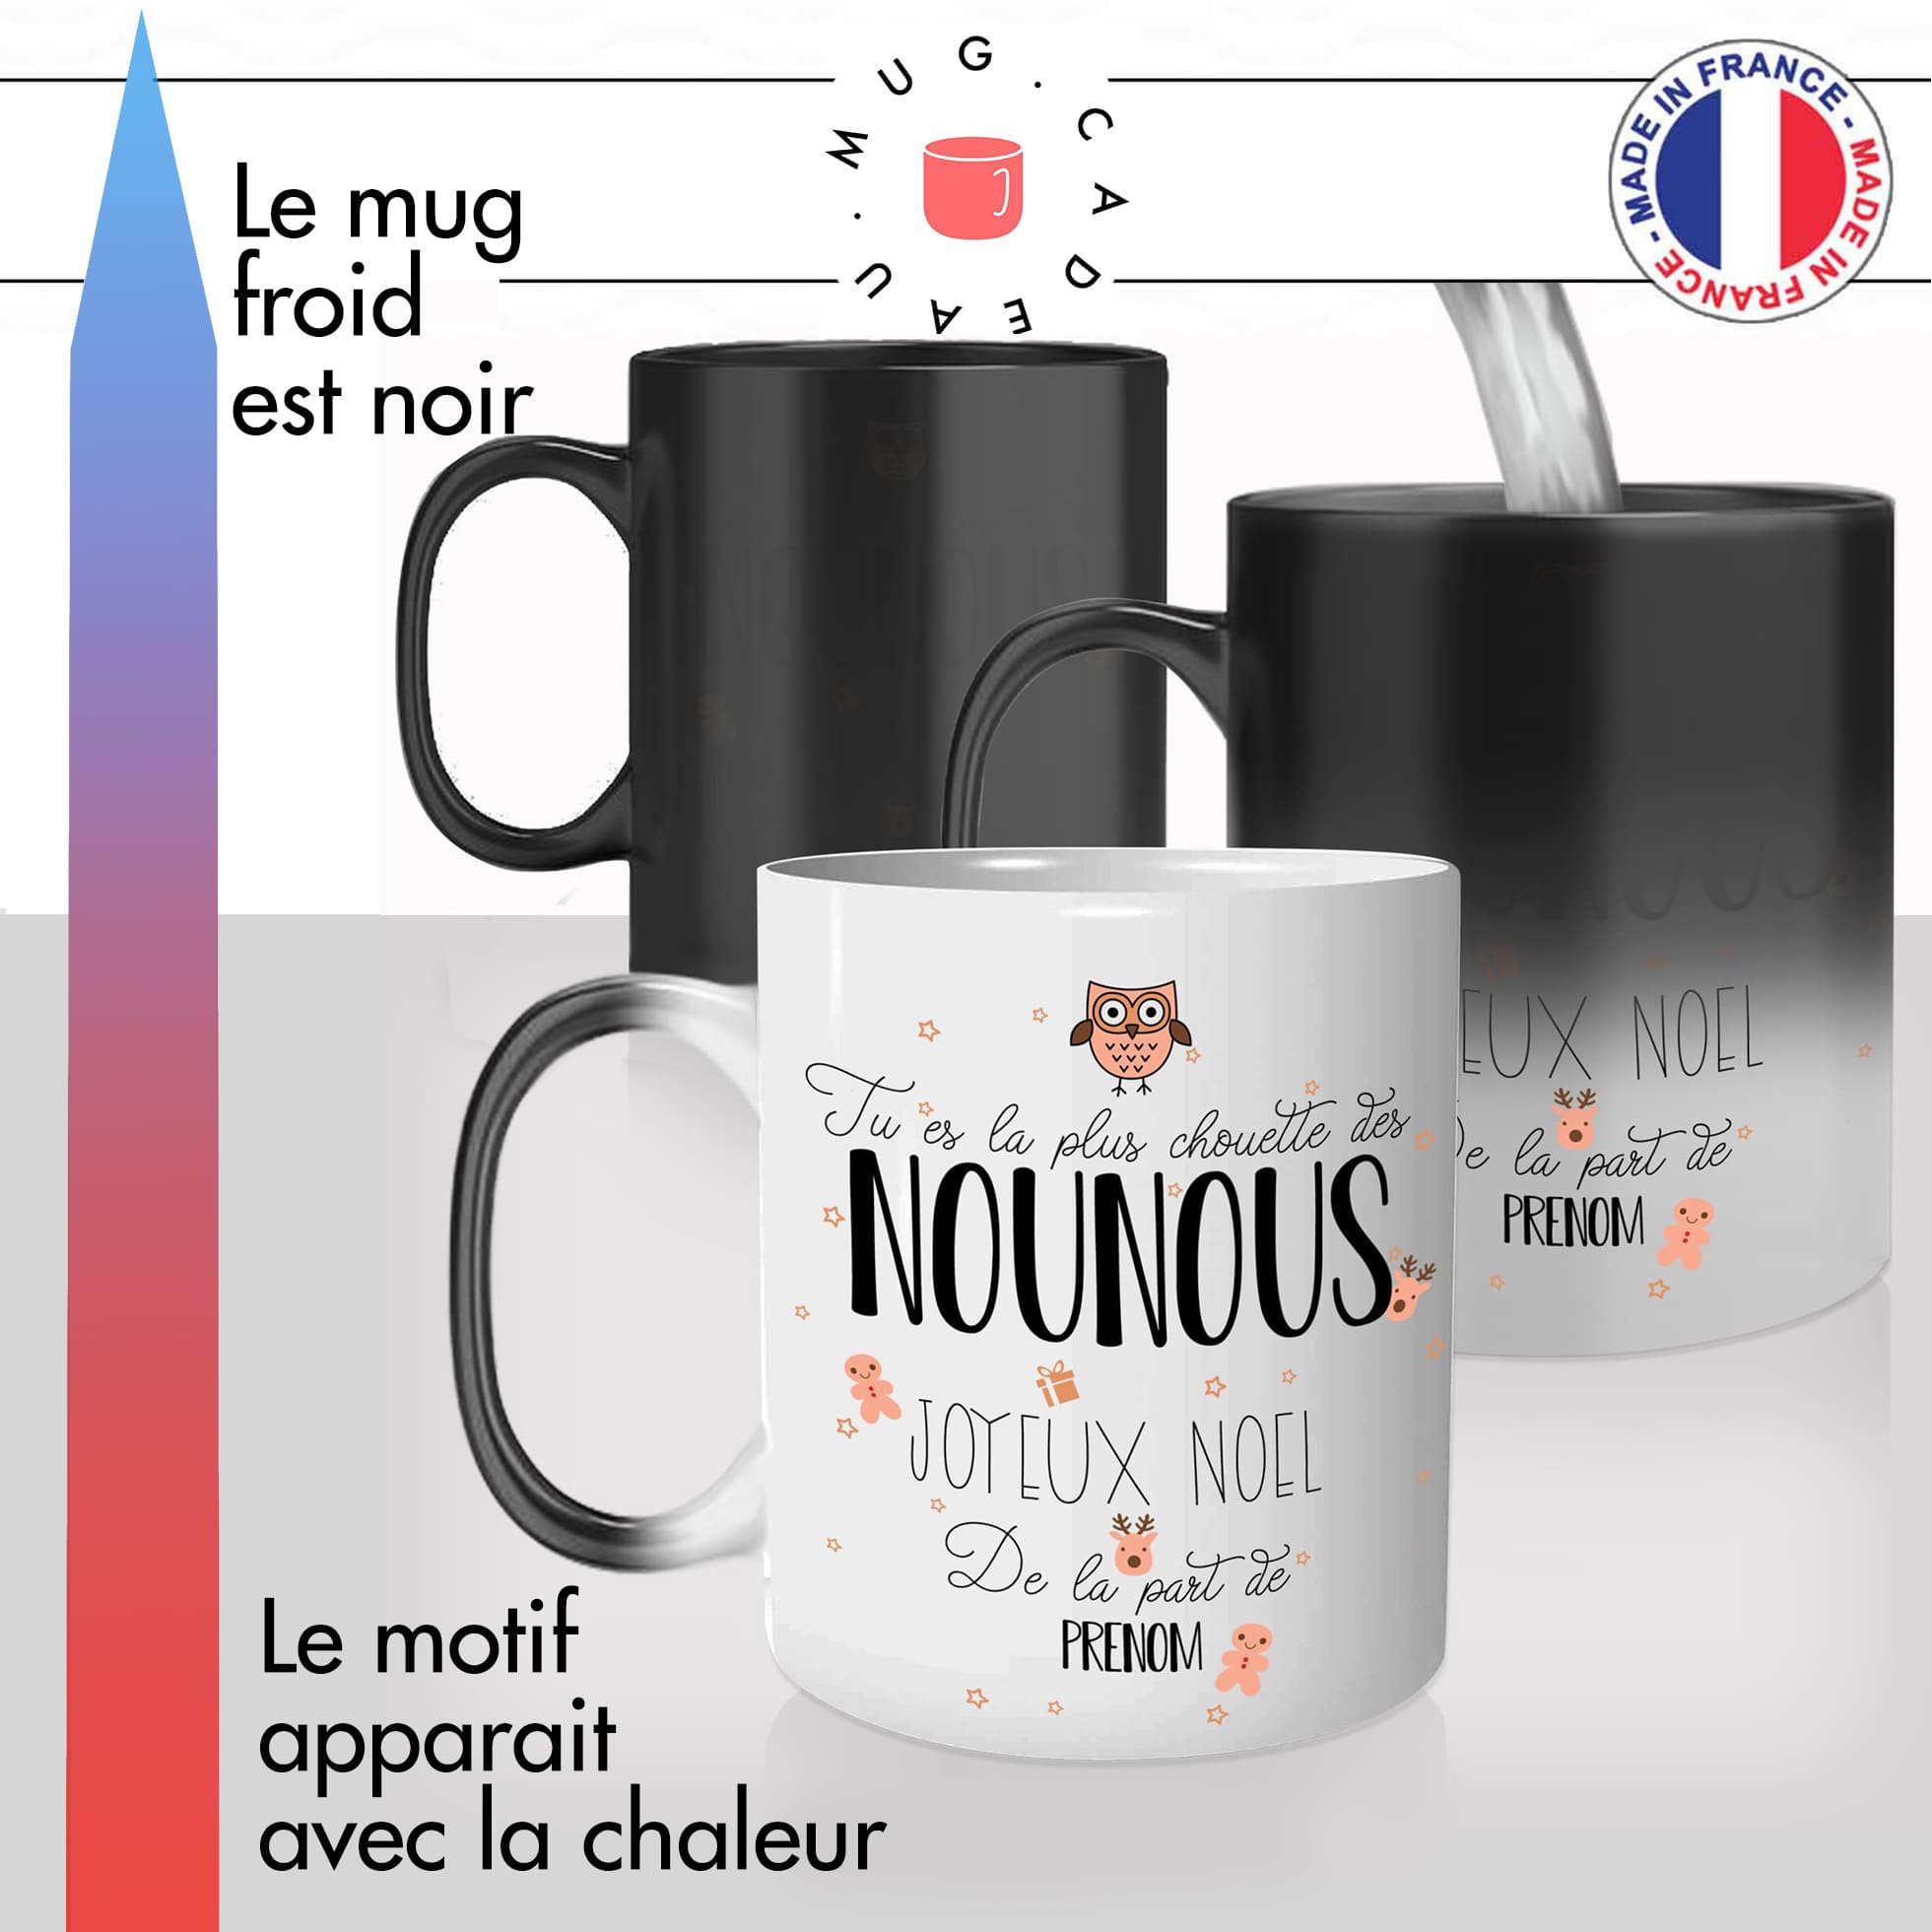 mug magique thermoréactif thermo chauffant personnalisé chouette nounou joyeux noel nourrisse métier prenom personnalisable cadeau original